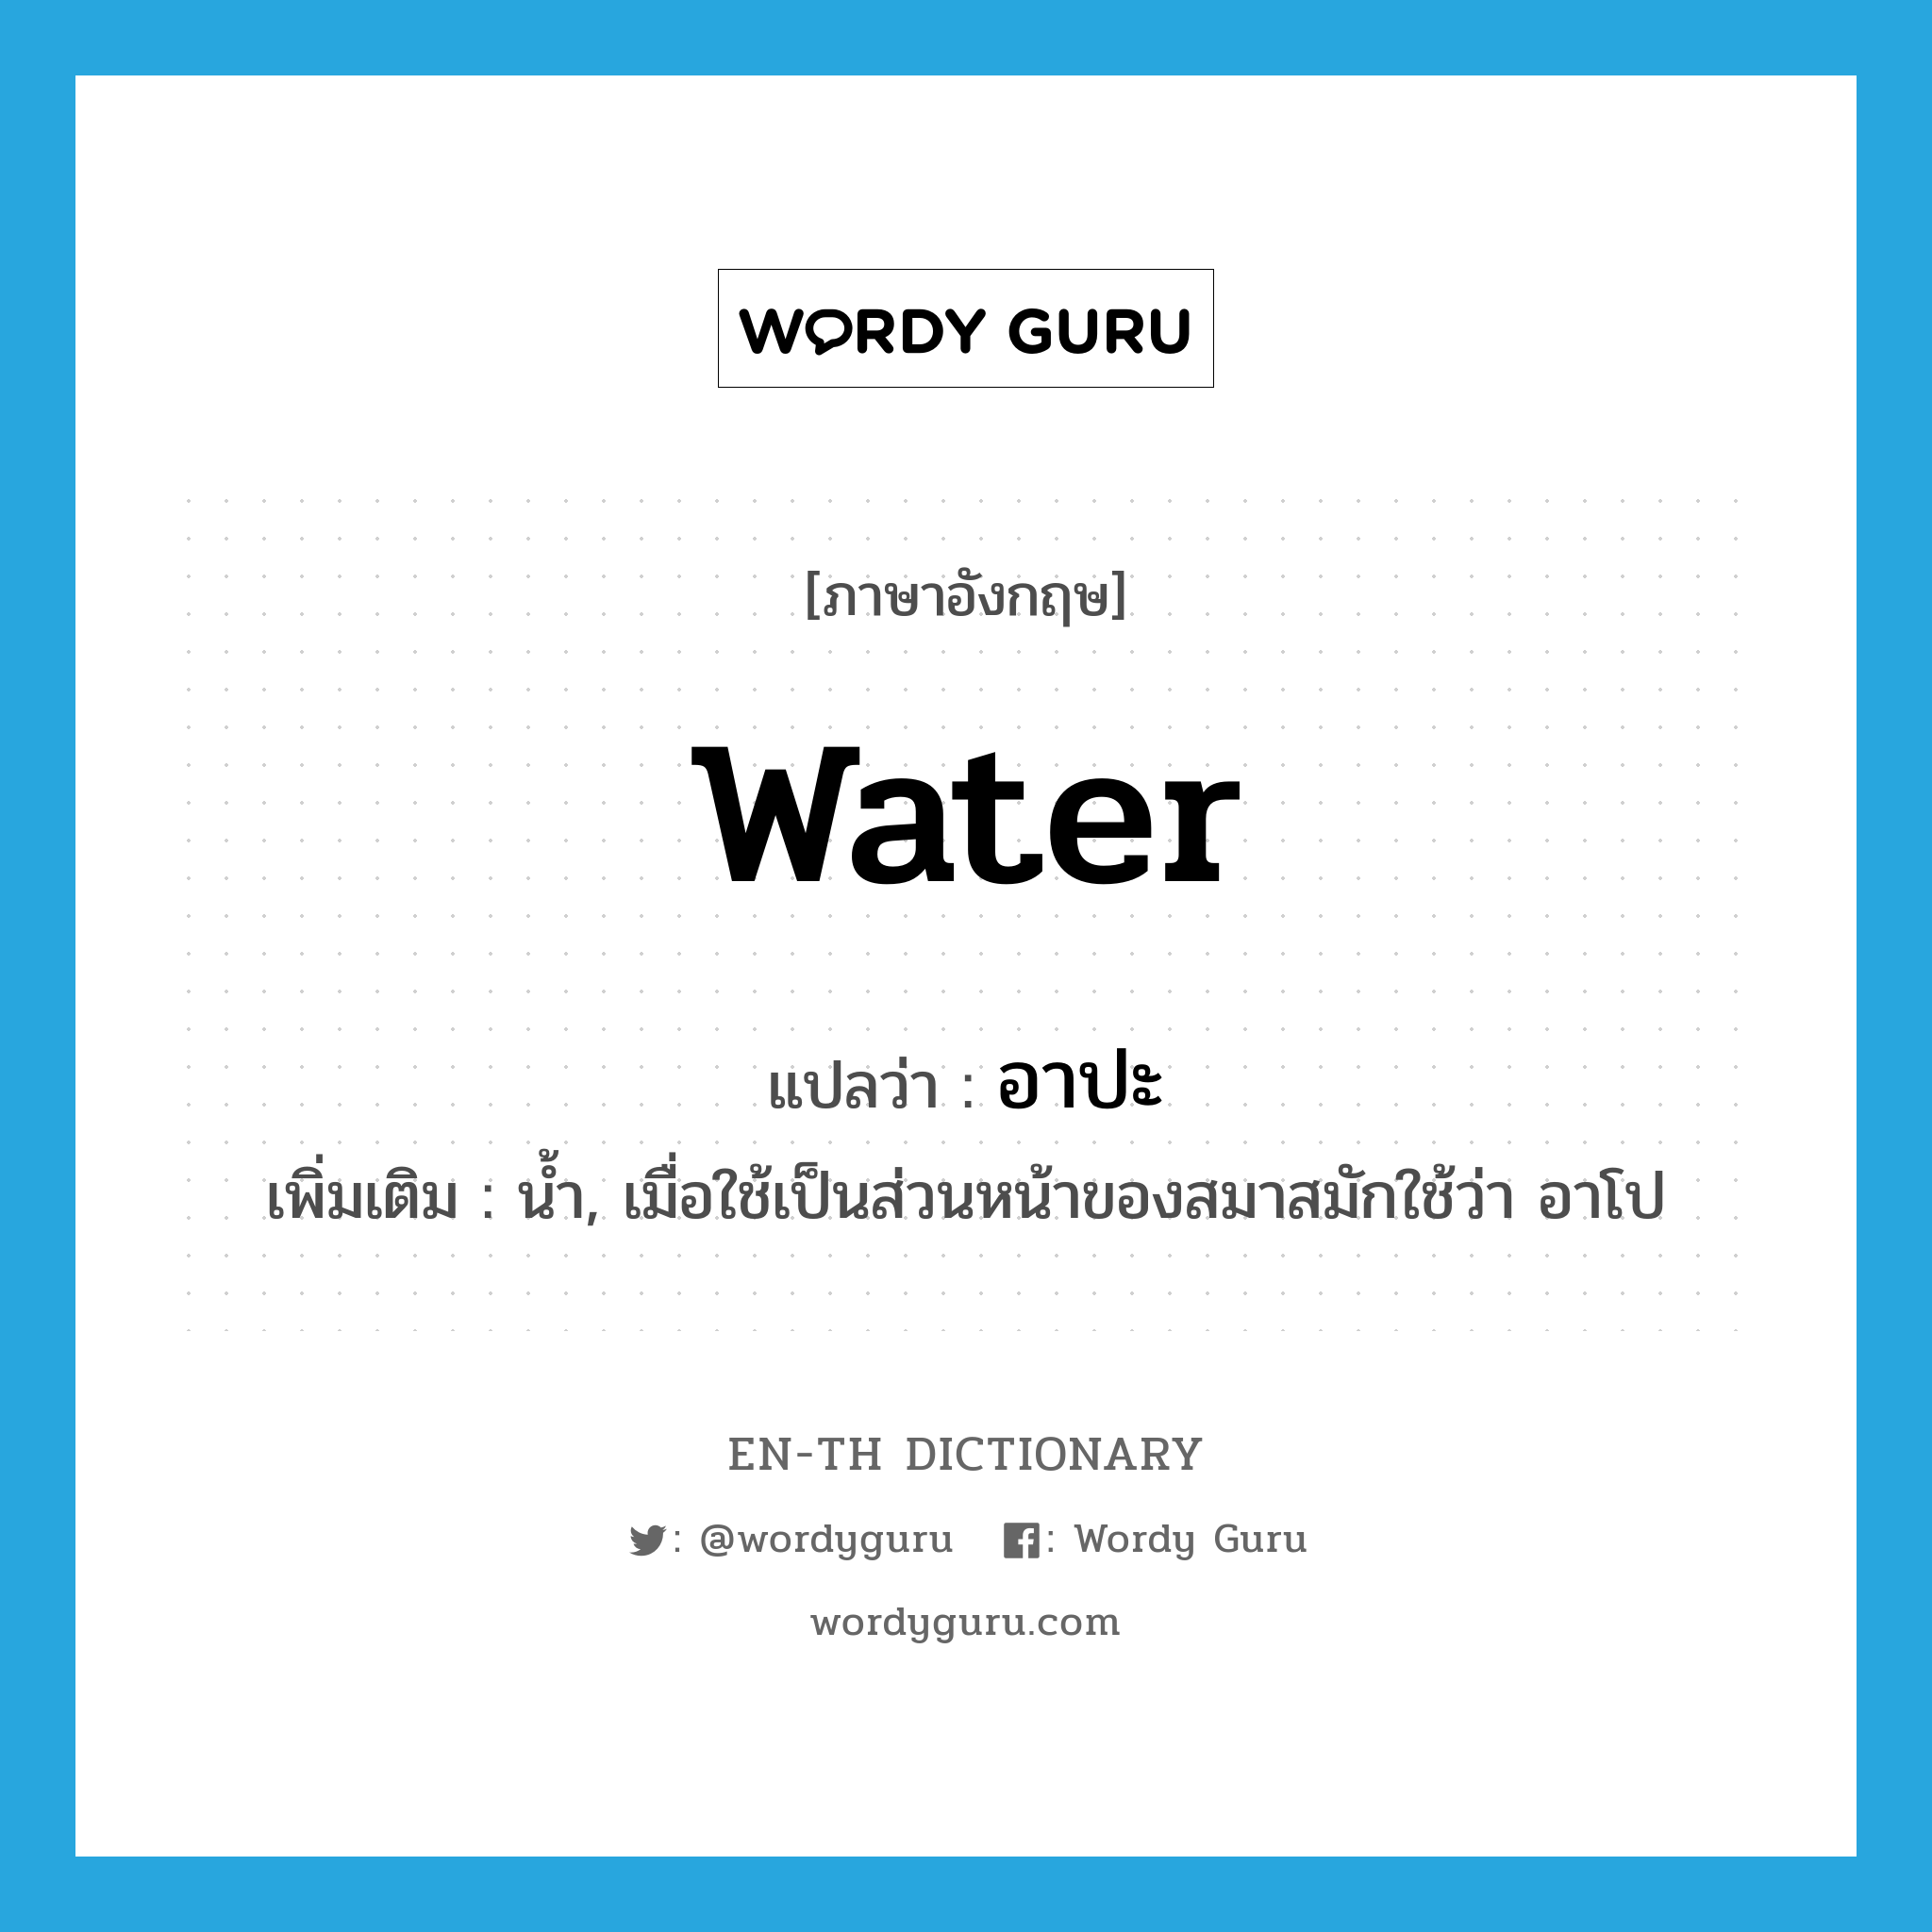 water แปลว่า?, คำศัพท์ภาษาอังกฤษ water แปลว่า อาปะ ประเภท N เพิ่มเติม น้ำ, เมื่อใช้เป็นส่วนหน้าของสมาสมักใช้ว่า อาโป หมวด N